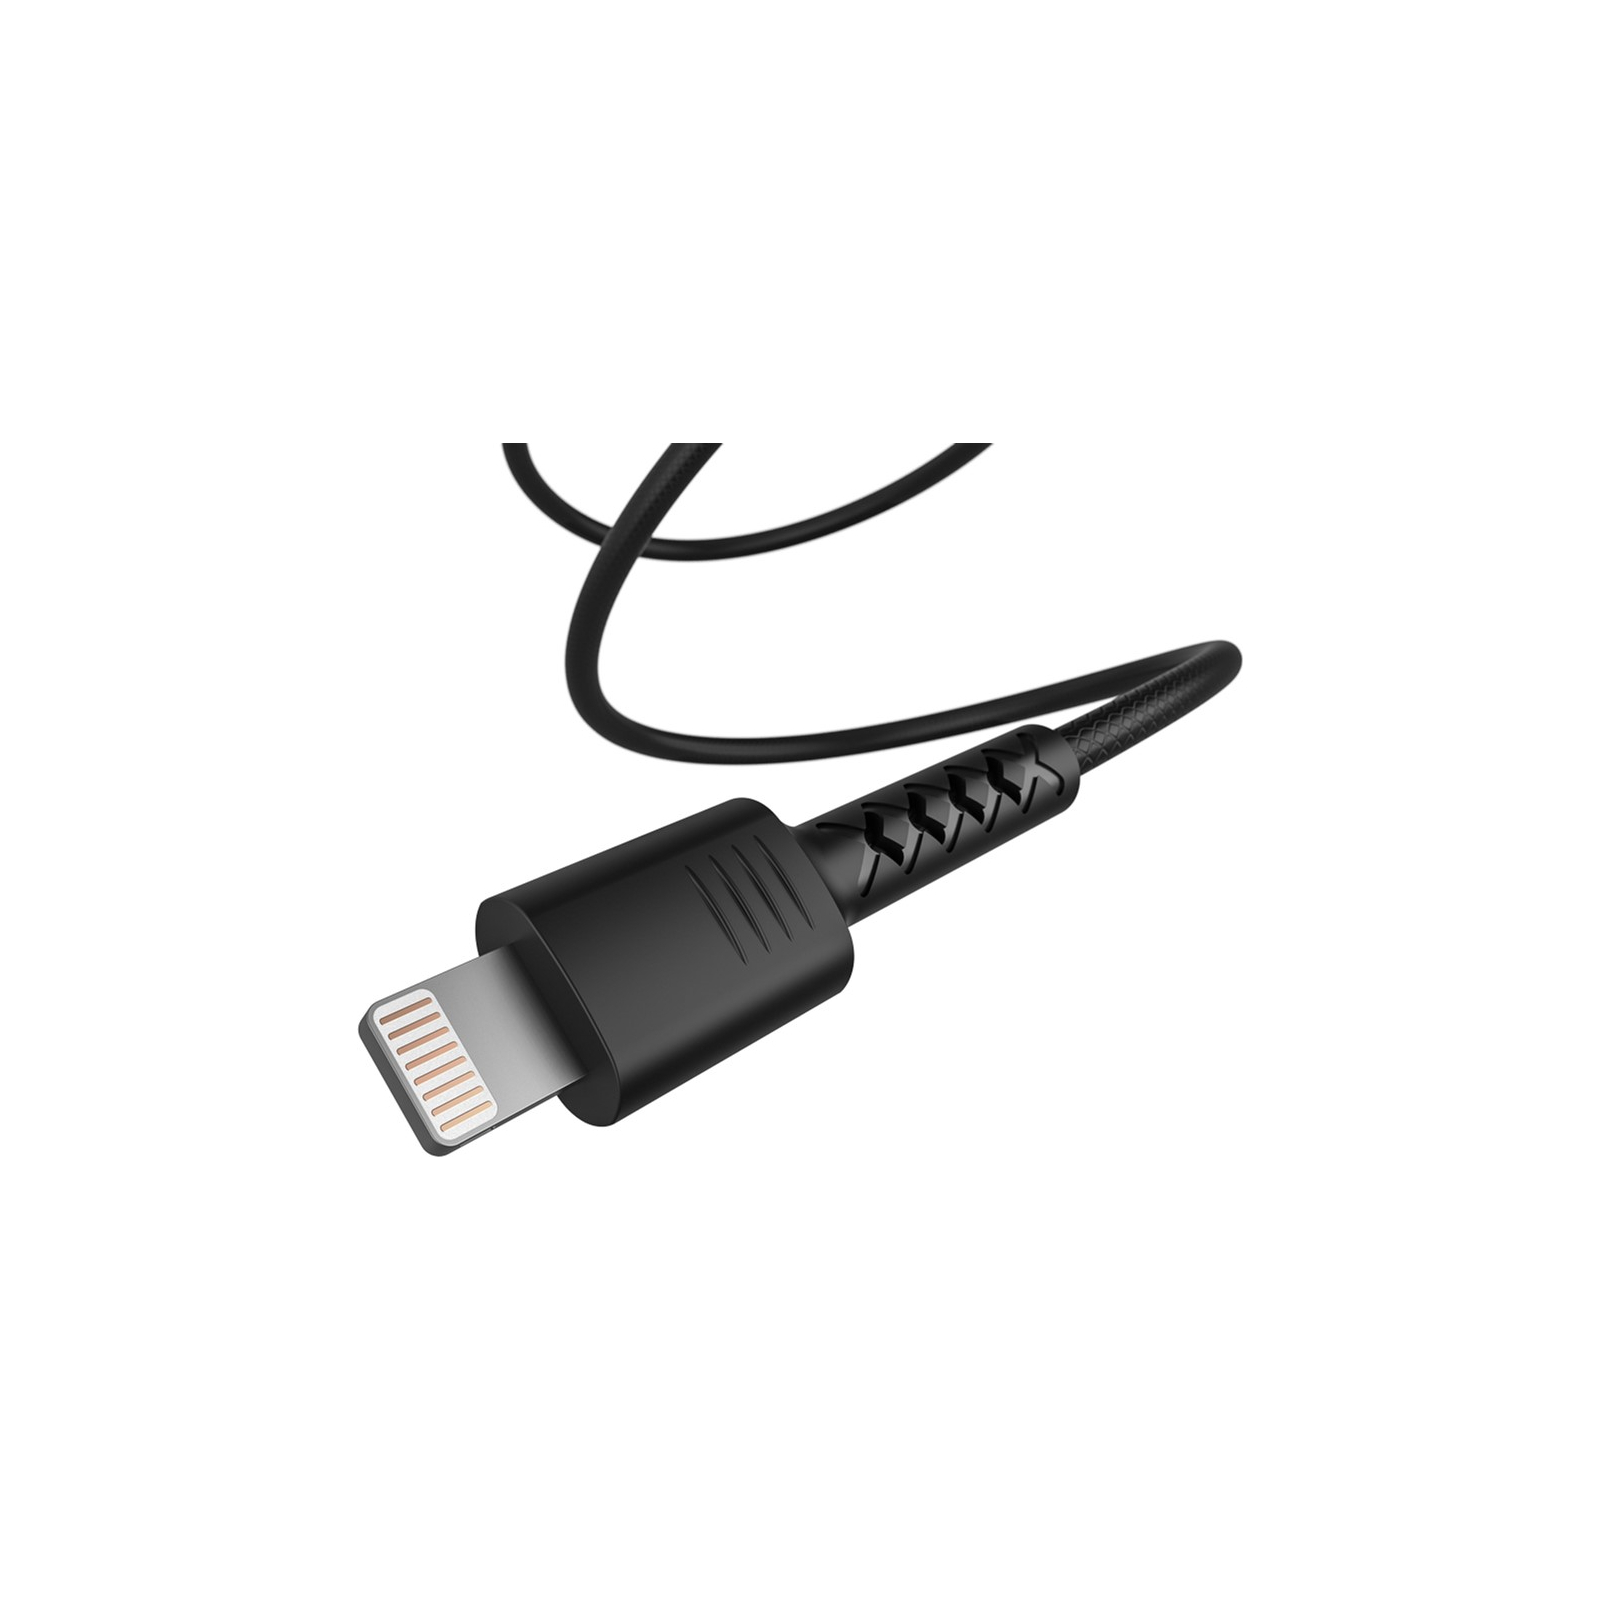 Дата кабель USB 2.0 AM to Lightning 1.0m Soft black Pixus (4897058530933) изображение 3